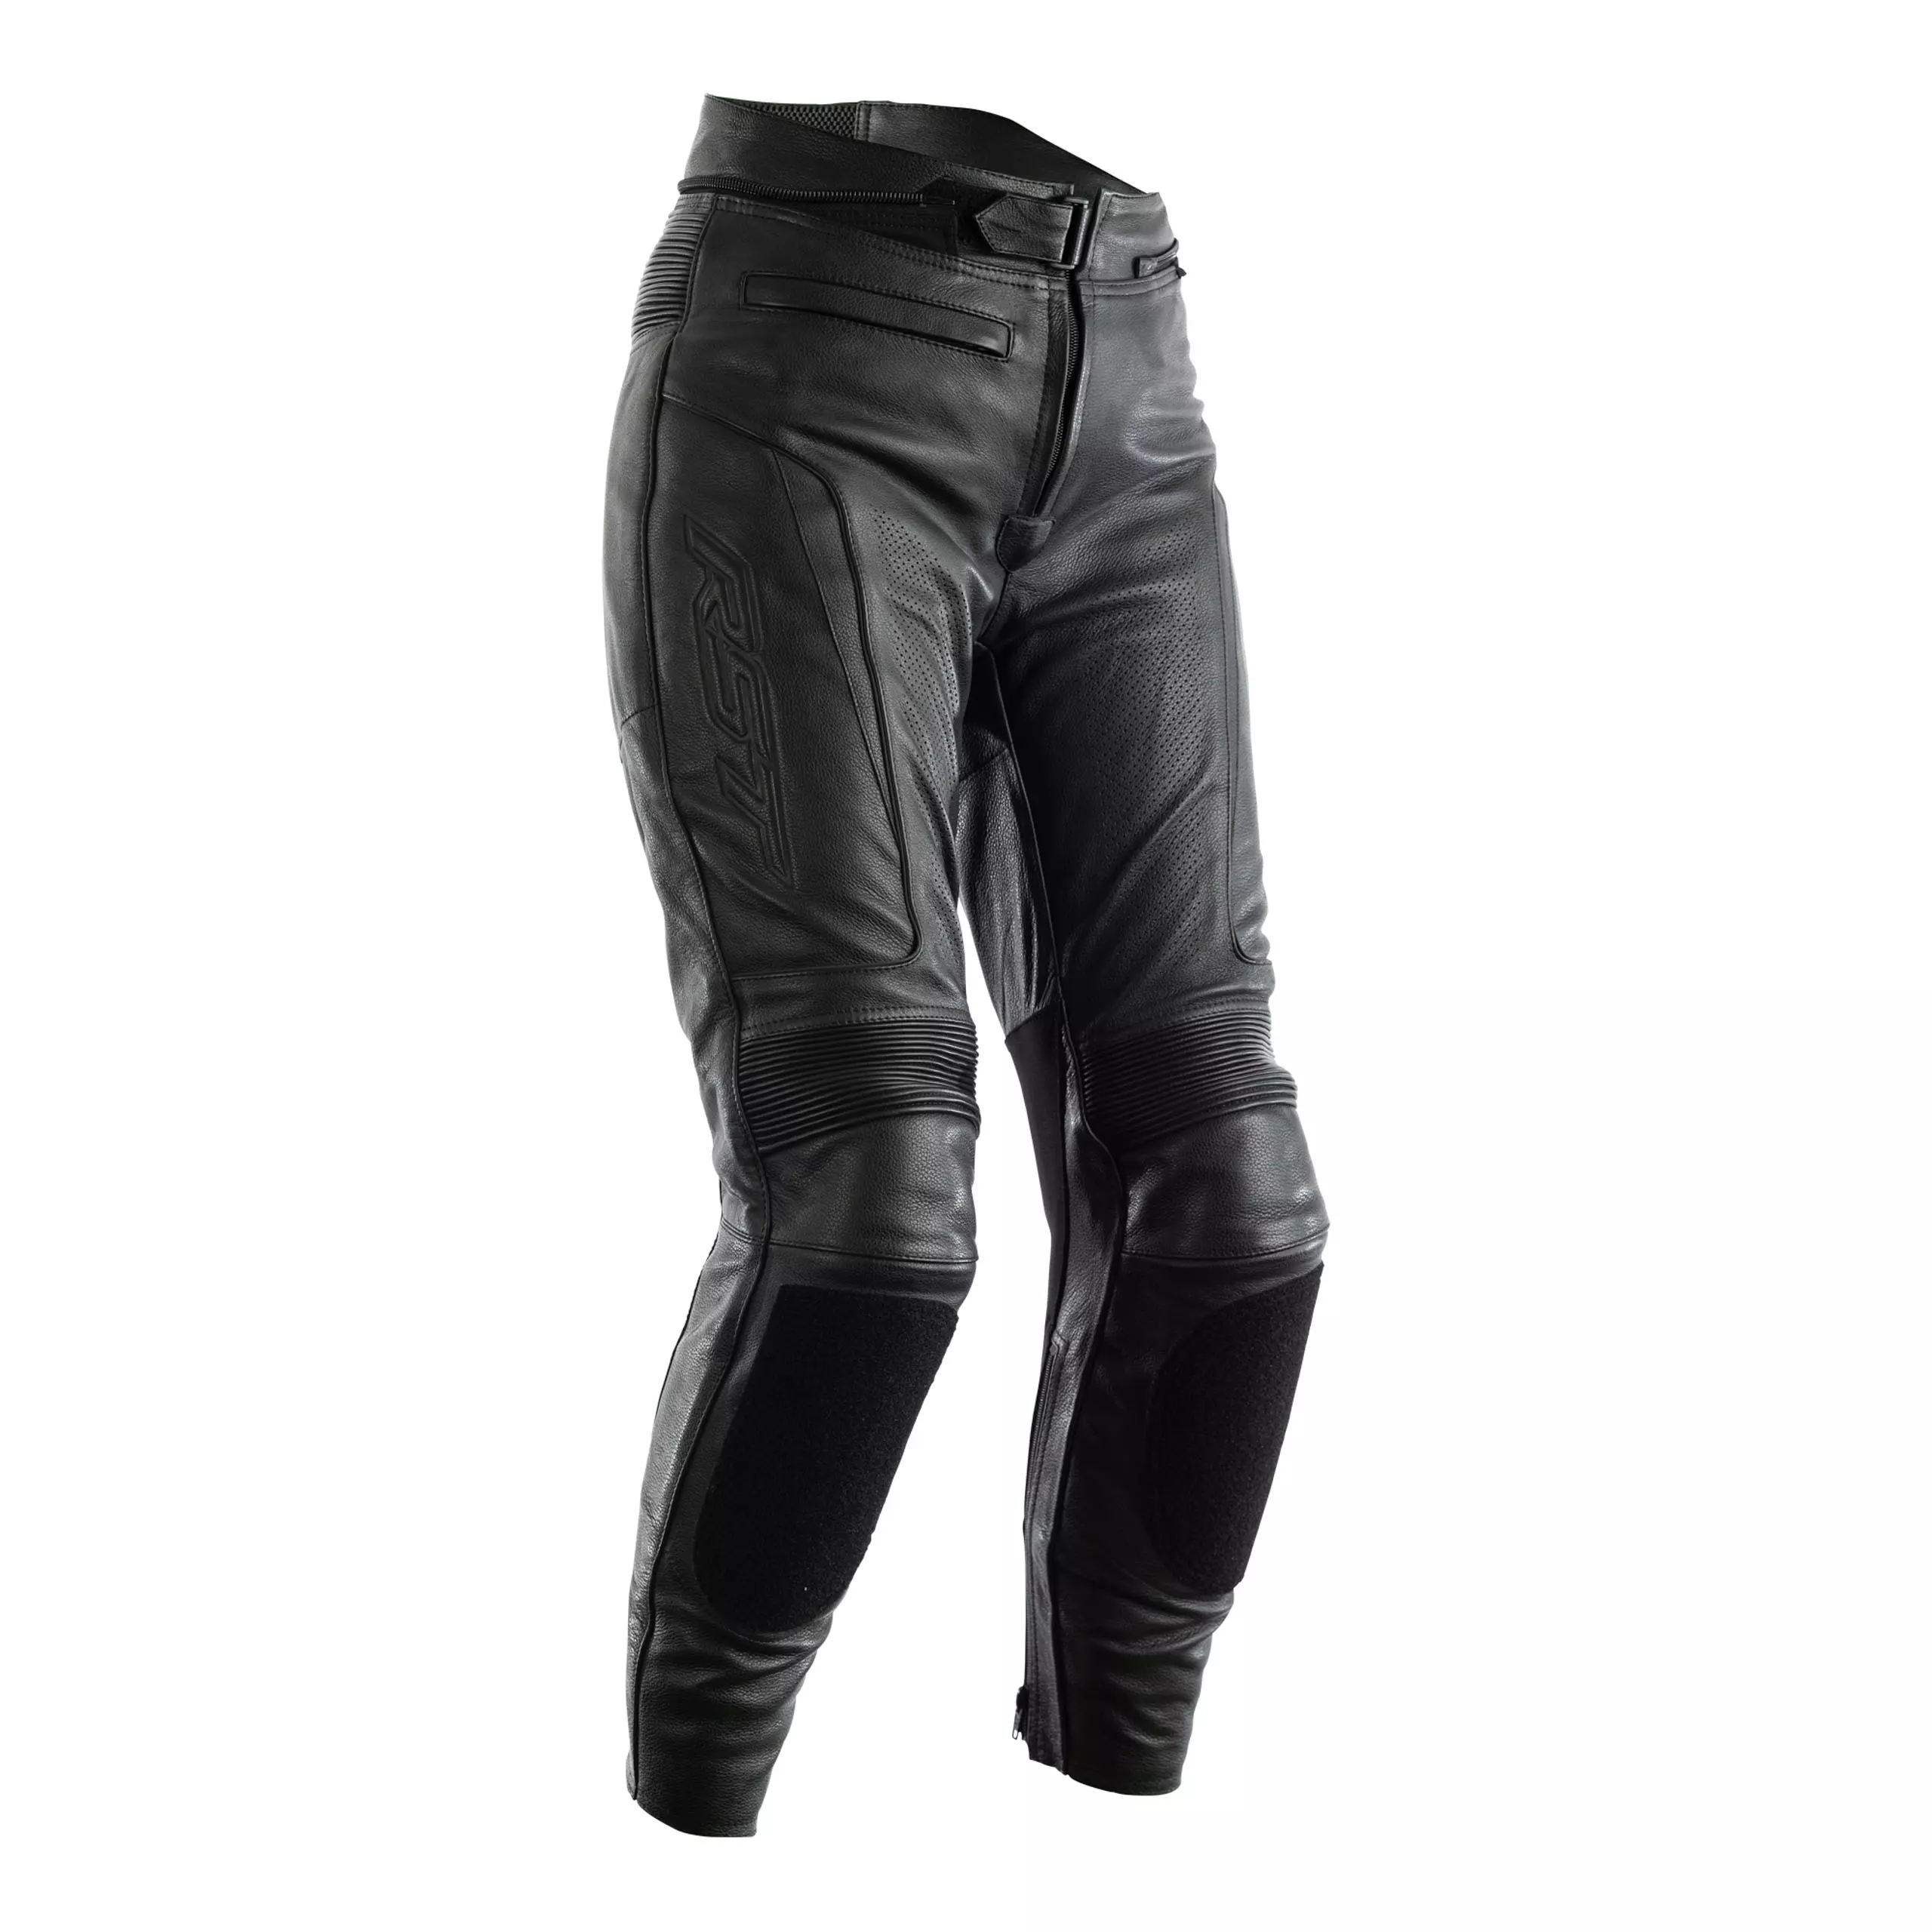 Motorcykelbukser i læder til kvinder RST Lady GT sort M